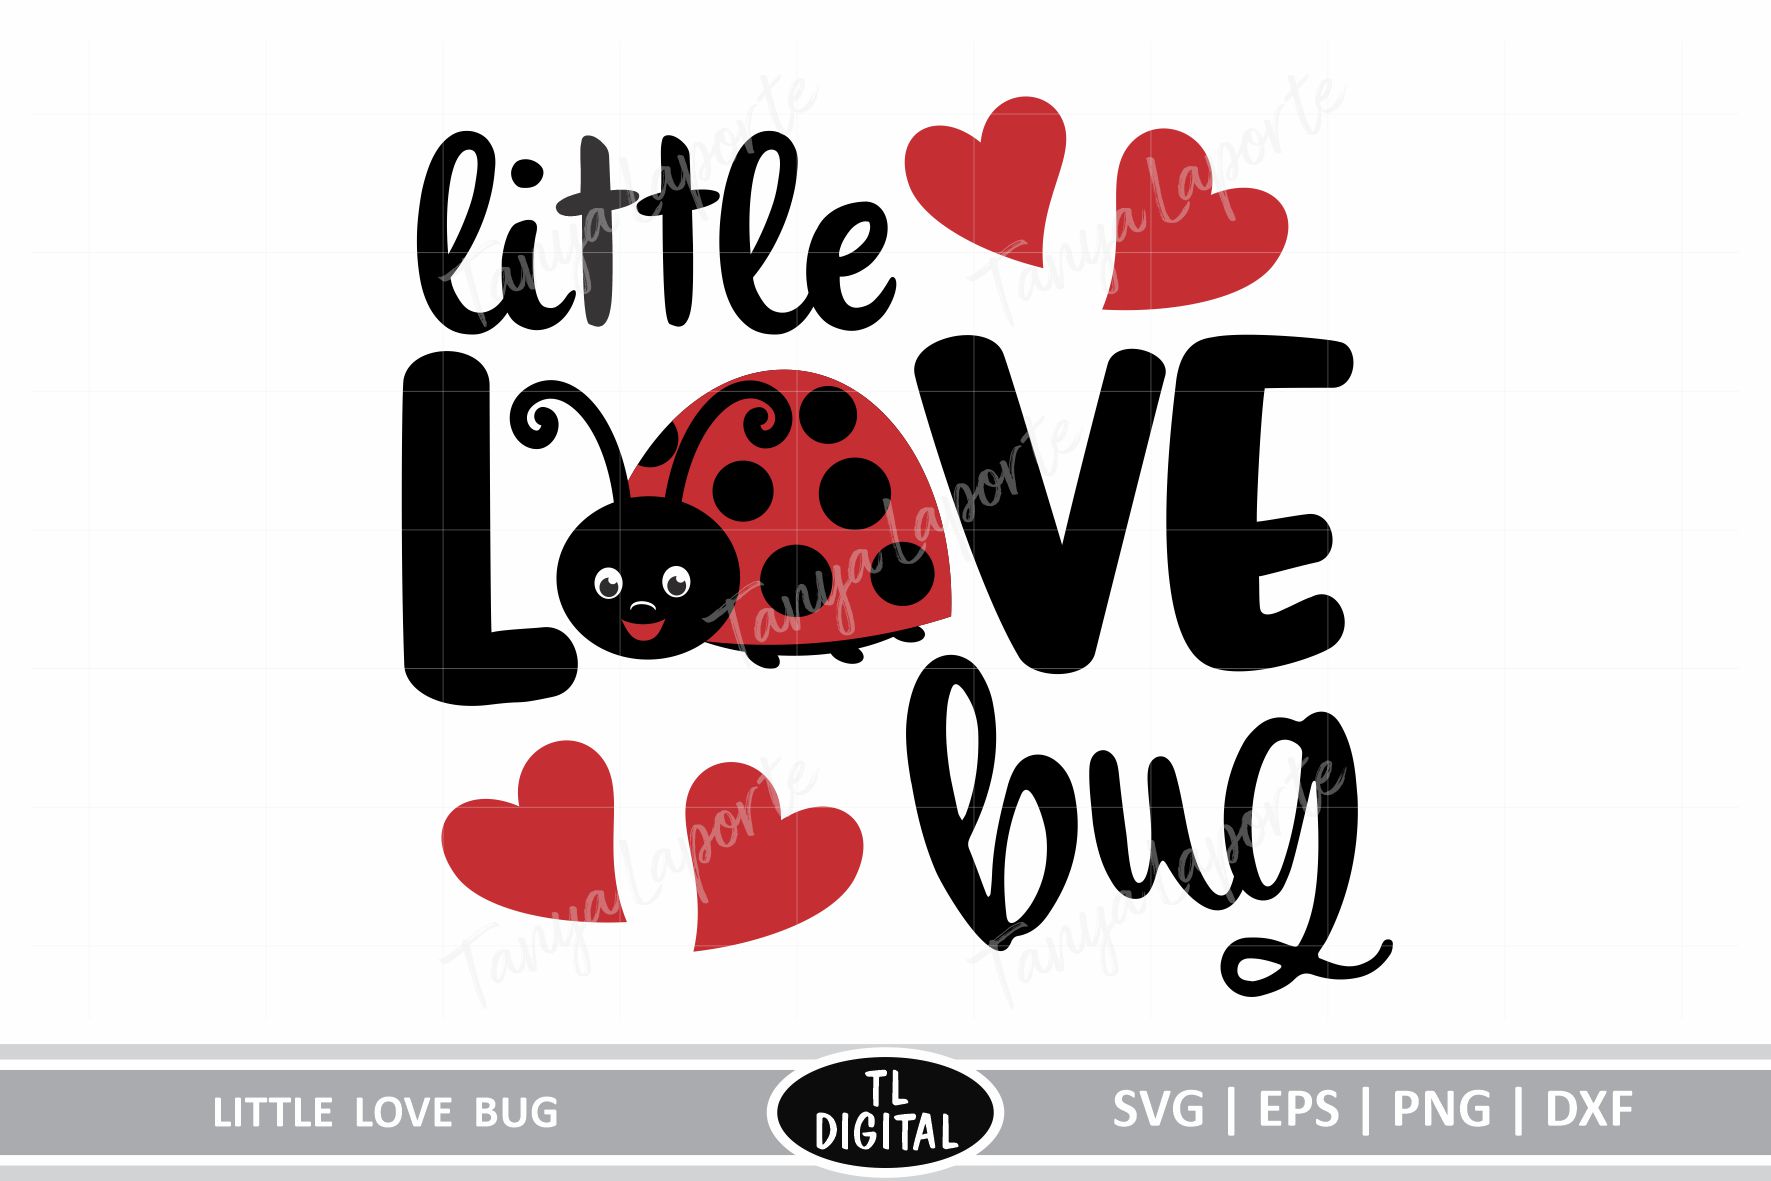 Little Love Bug - SVG | EPS | PNG |DXF